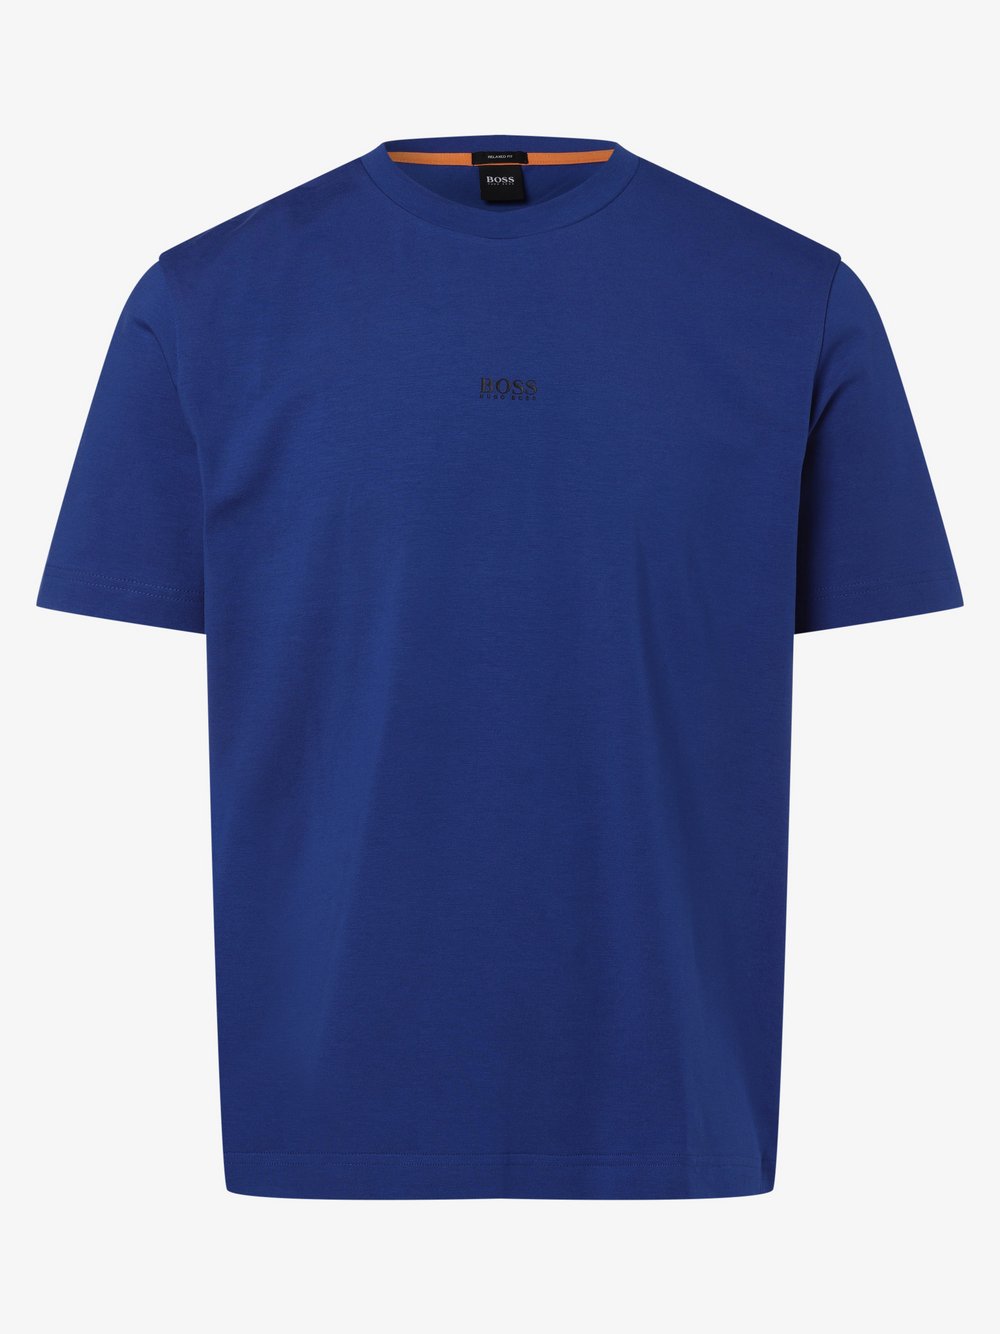 BOSS Casual - T-shirt męski – TChup, niebieski